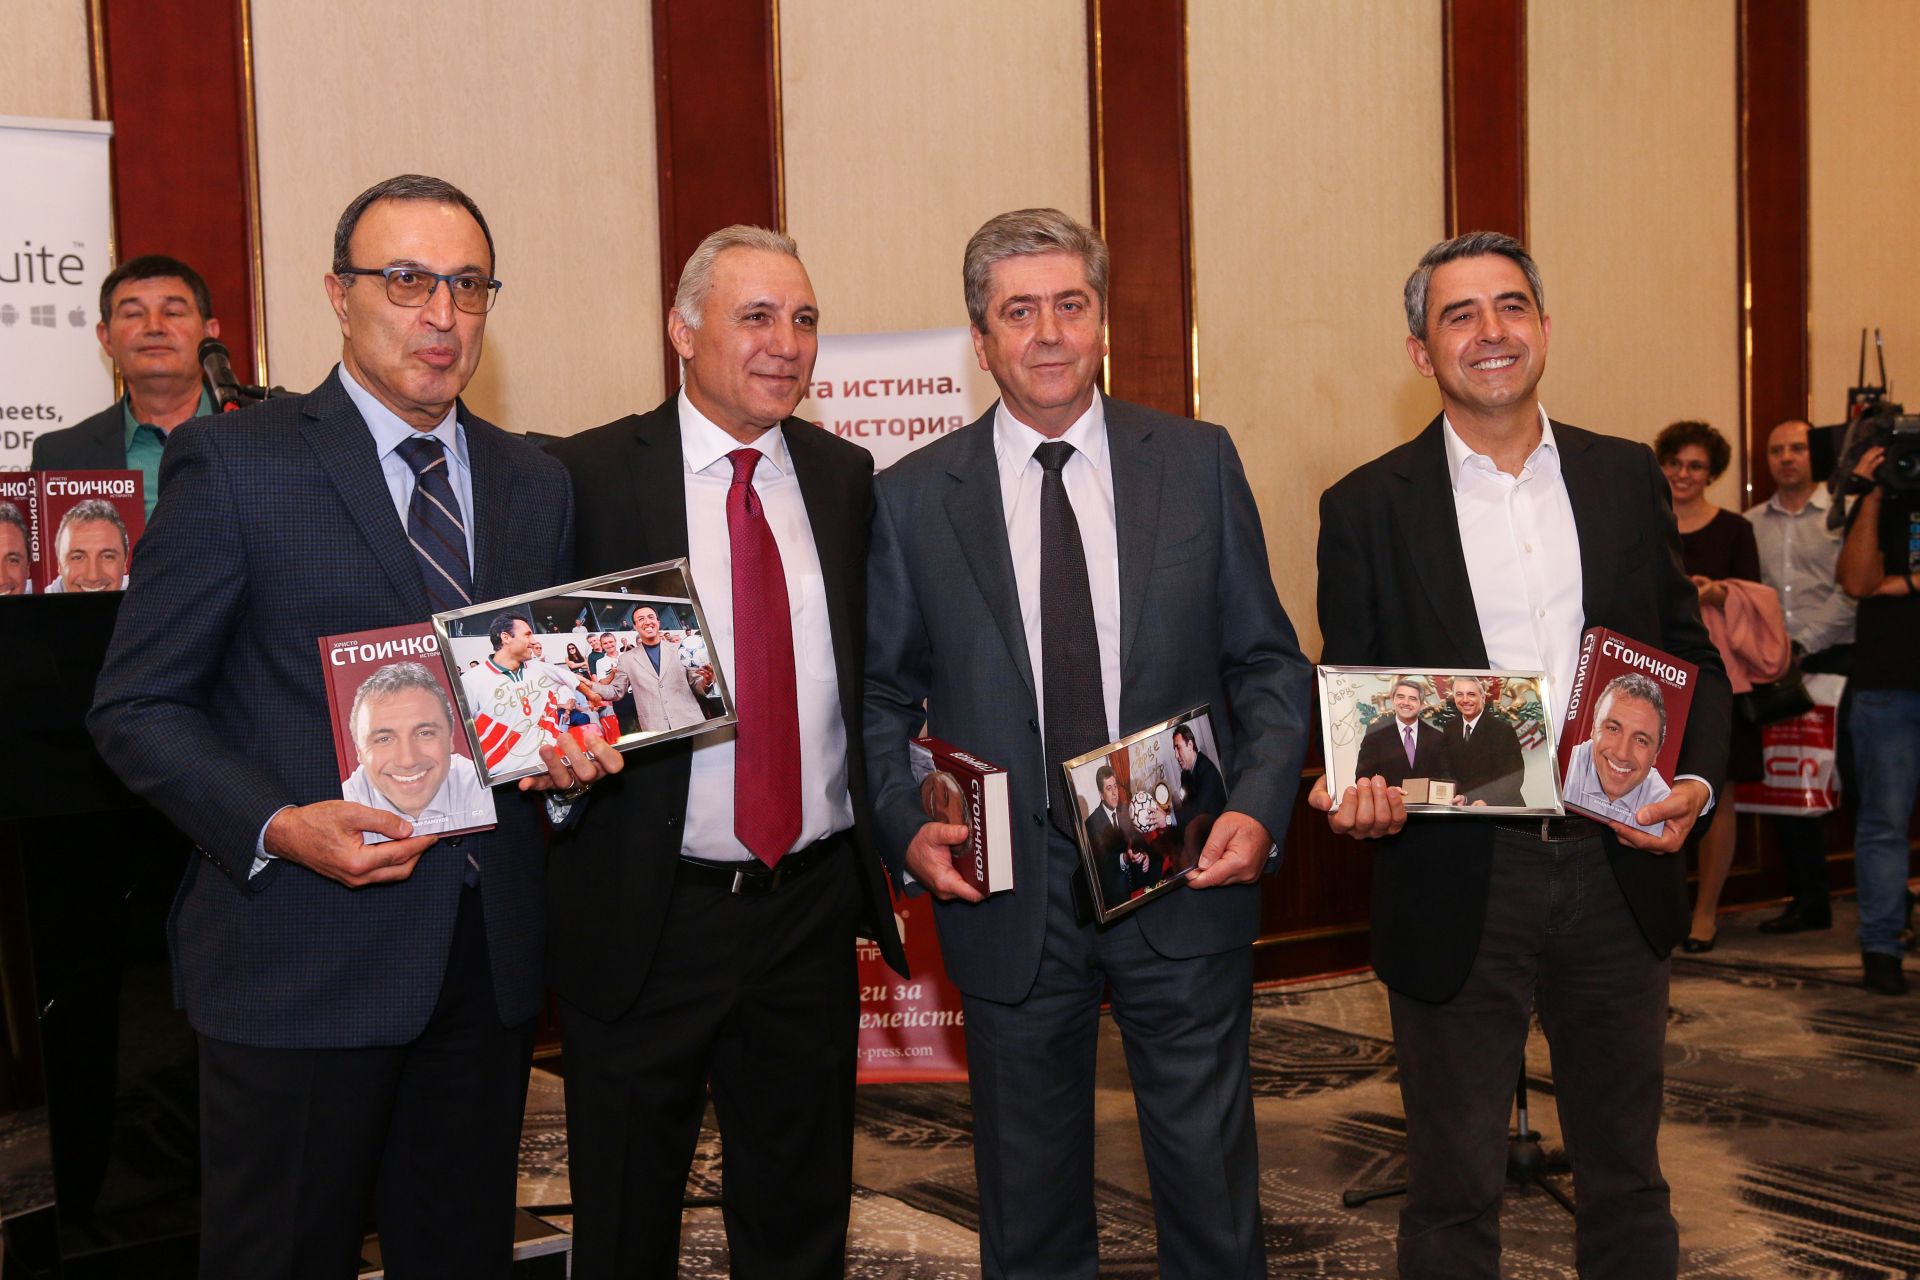 Трима президенти уважиха представянето на книгата му в София през ноември